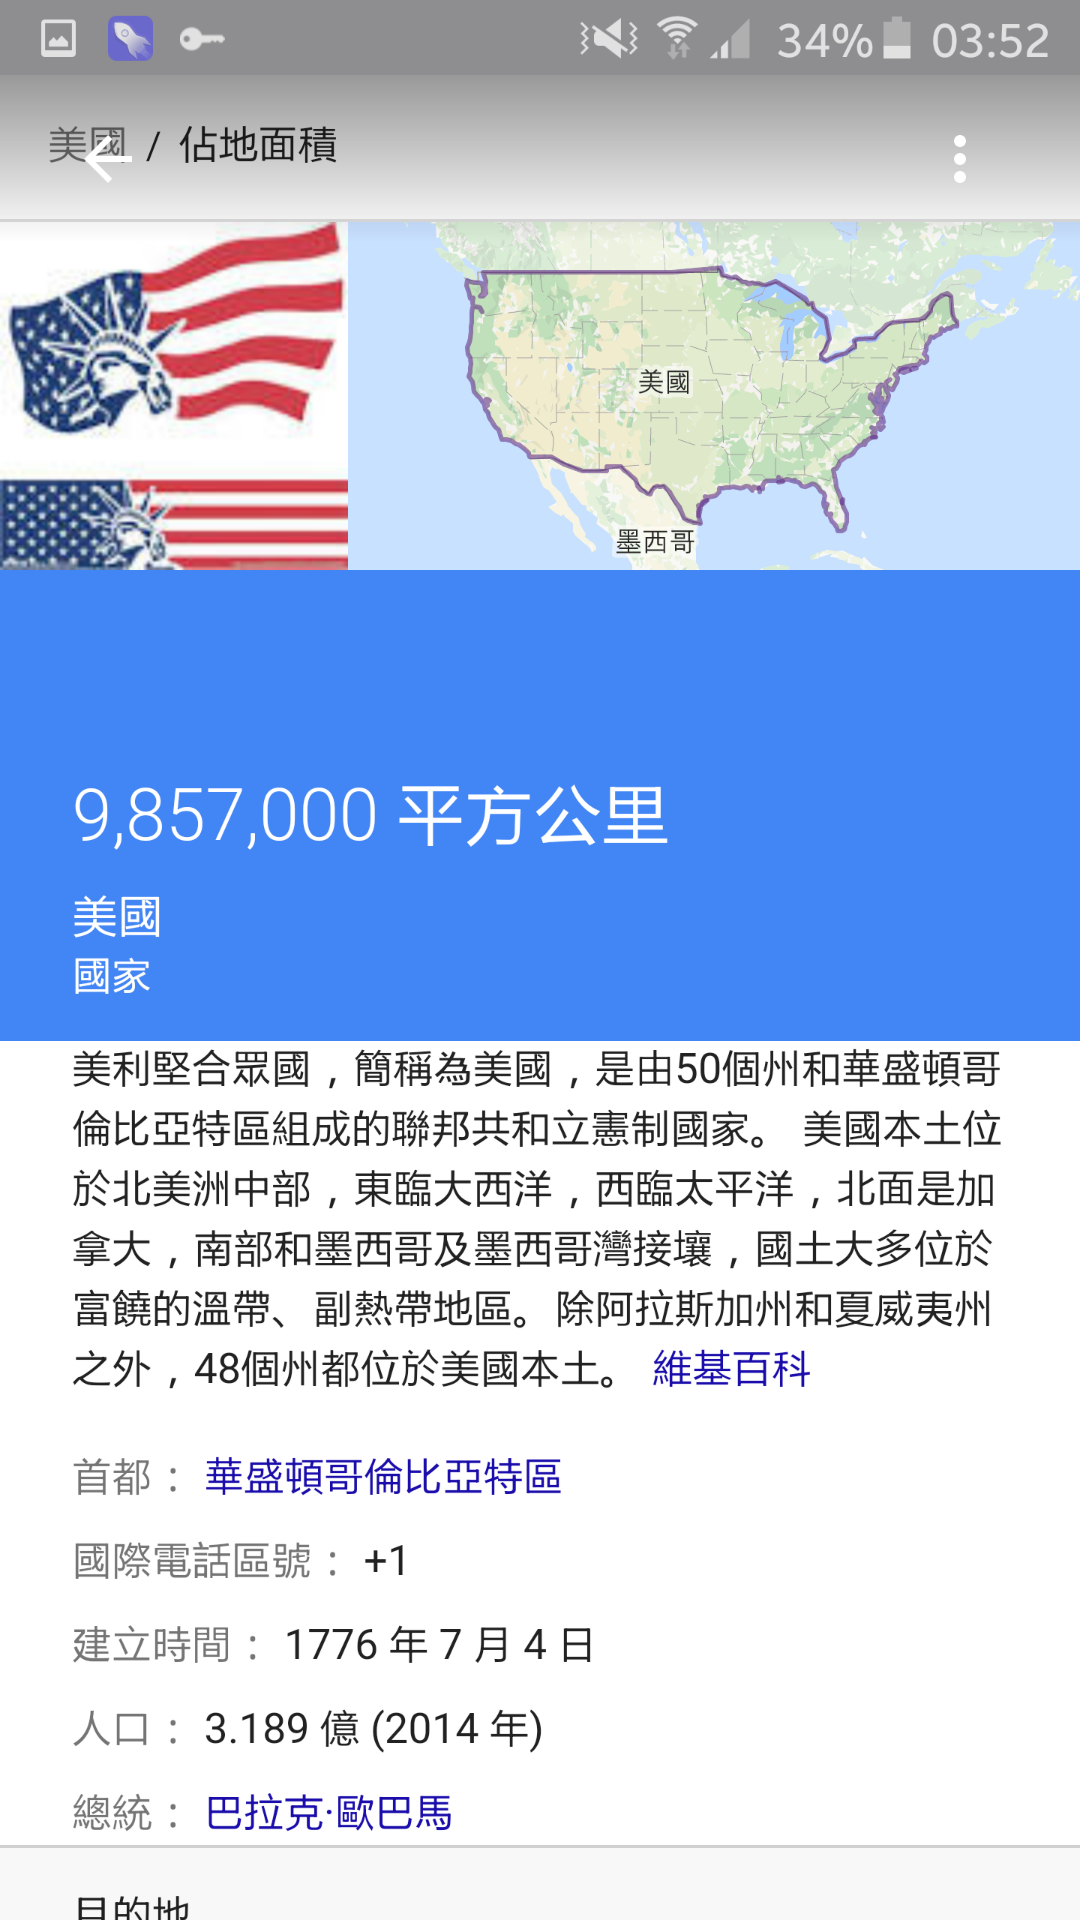 中国和美国哪个的领土面积大? - 小明的回答 - 